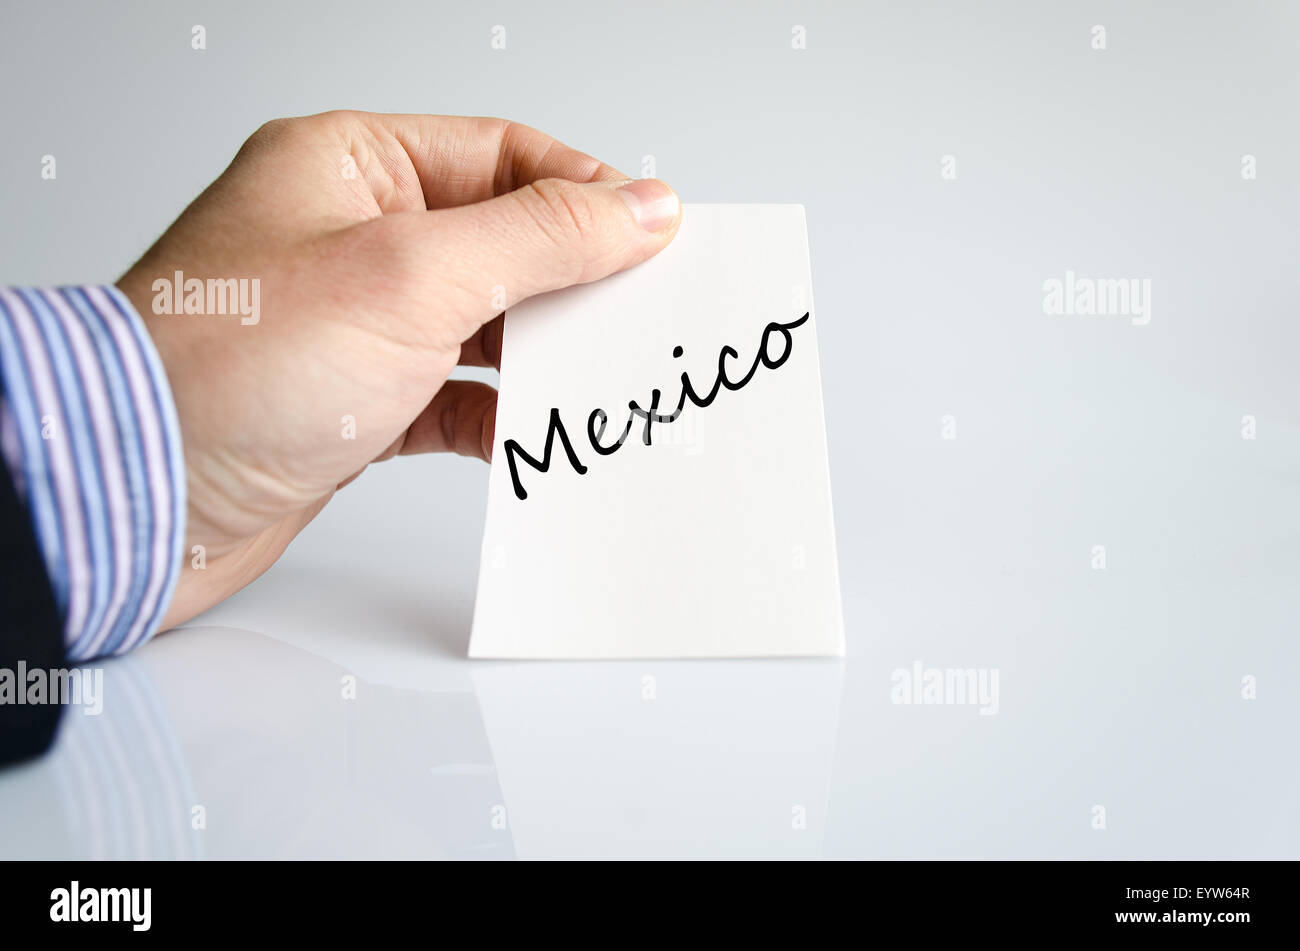 Messico testo concetto isolato su sfondo bianco Foto Stock